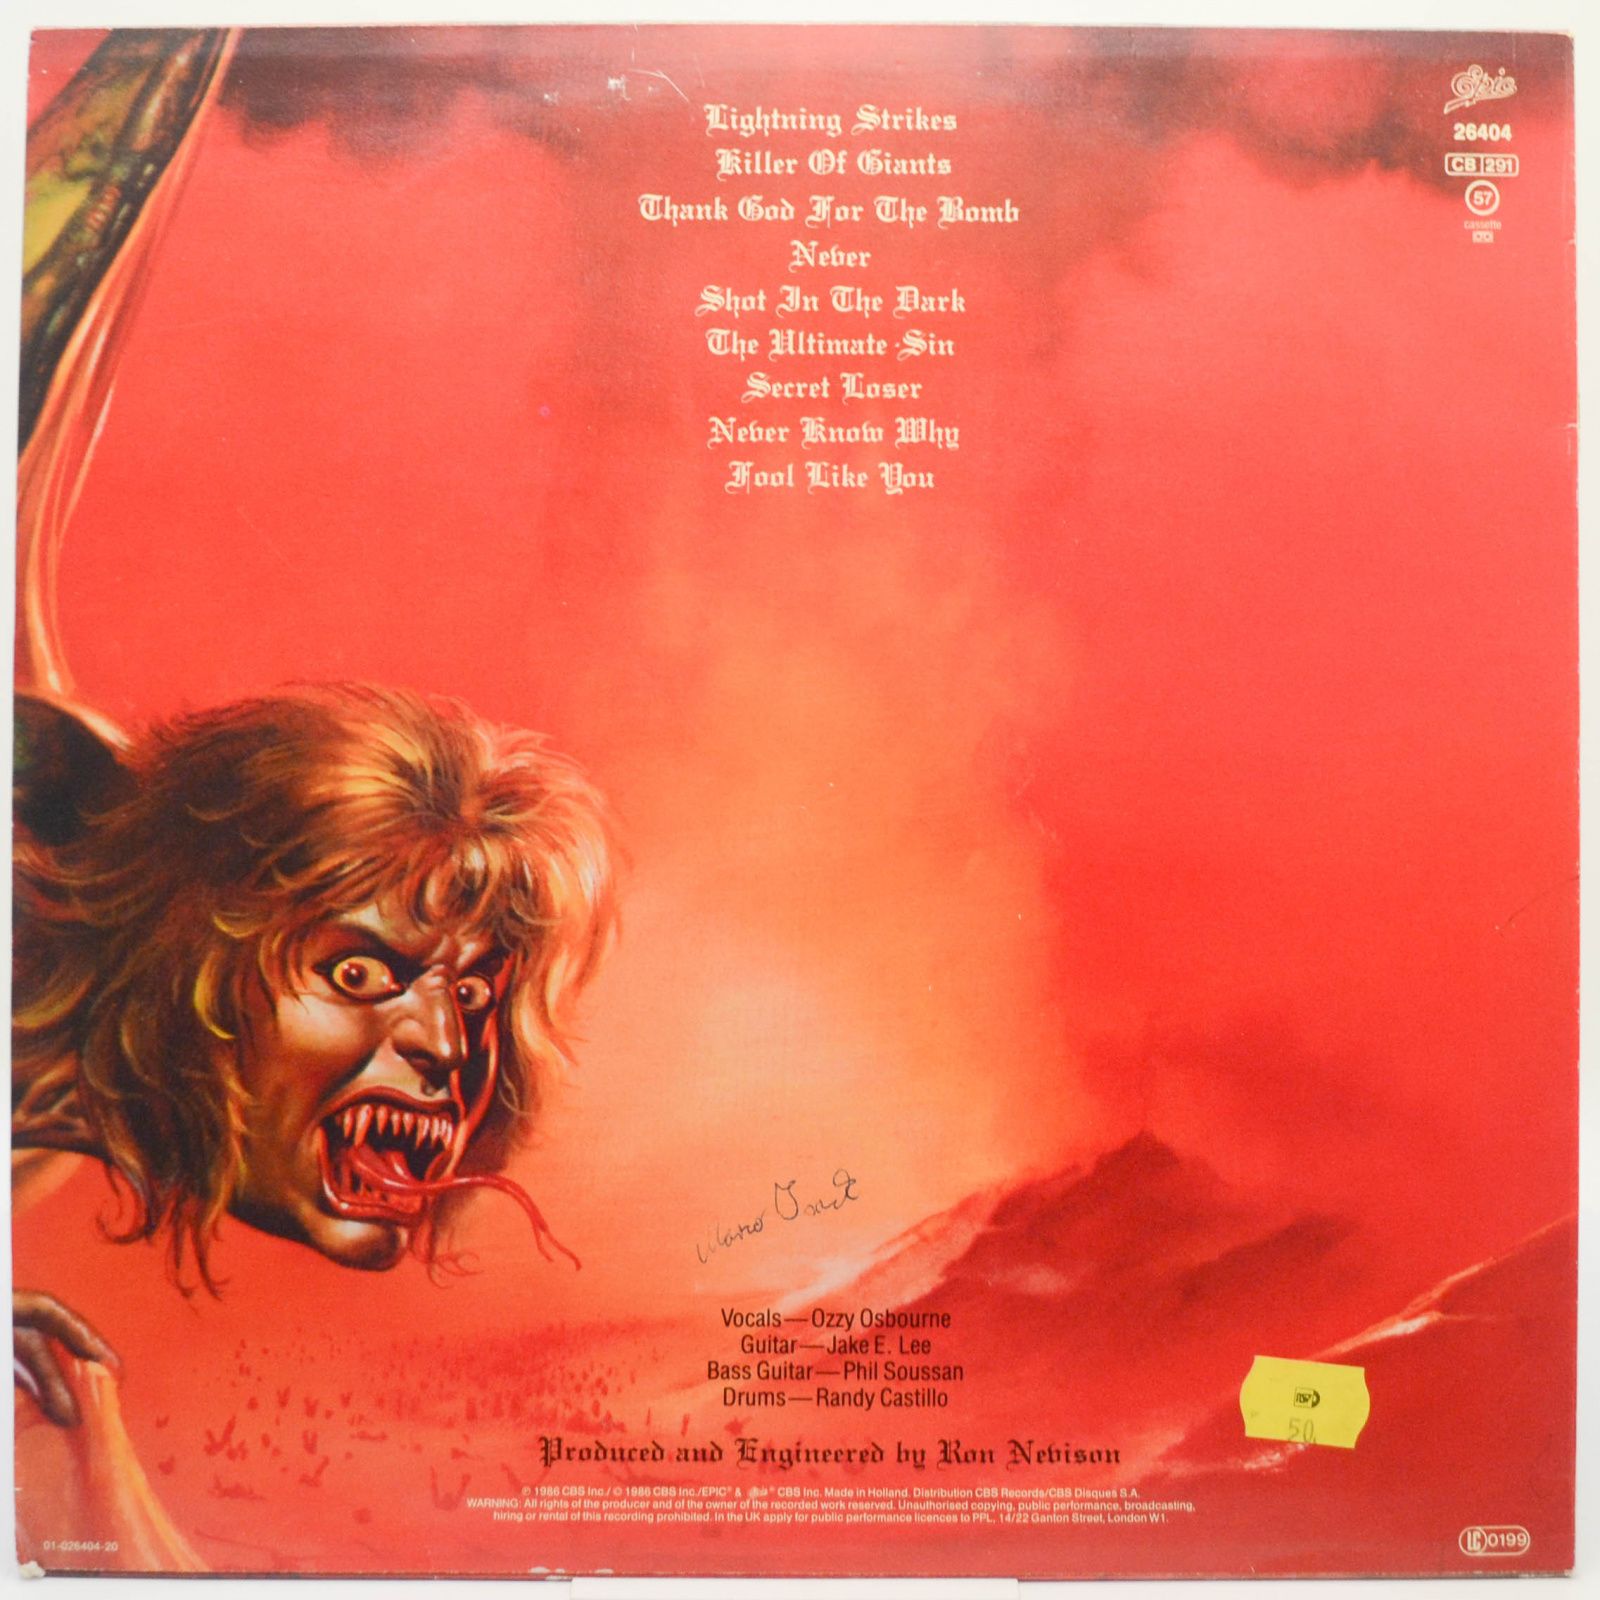 Ozzy Osbourne — The Ultimate Sin, 1986